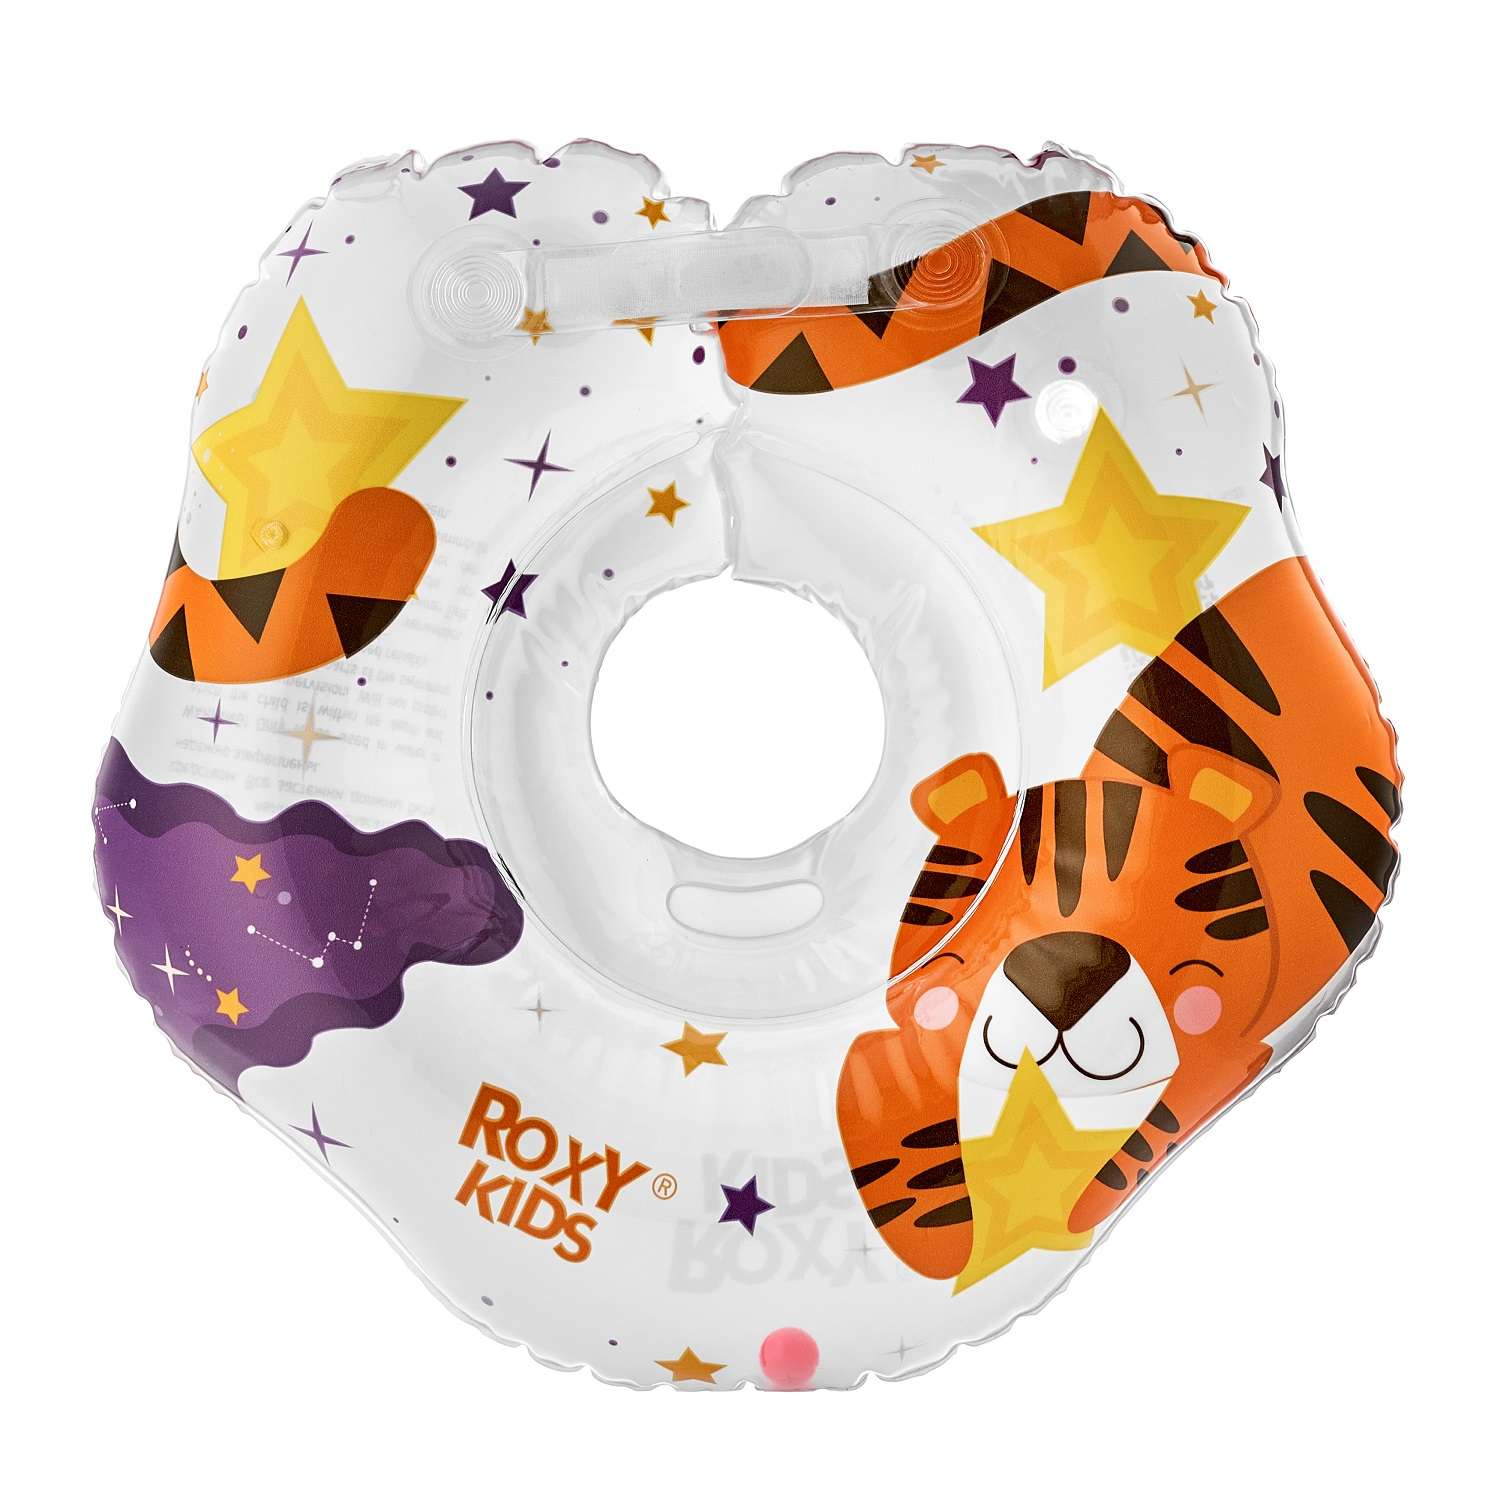 Круг для купания ROXY-KIDS надувной на шею для новорожденных и малышей Tiger Star - фото 9